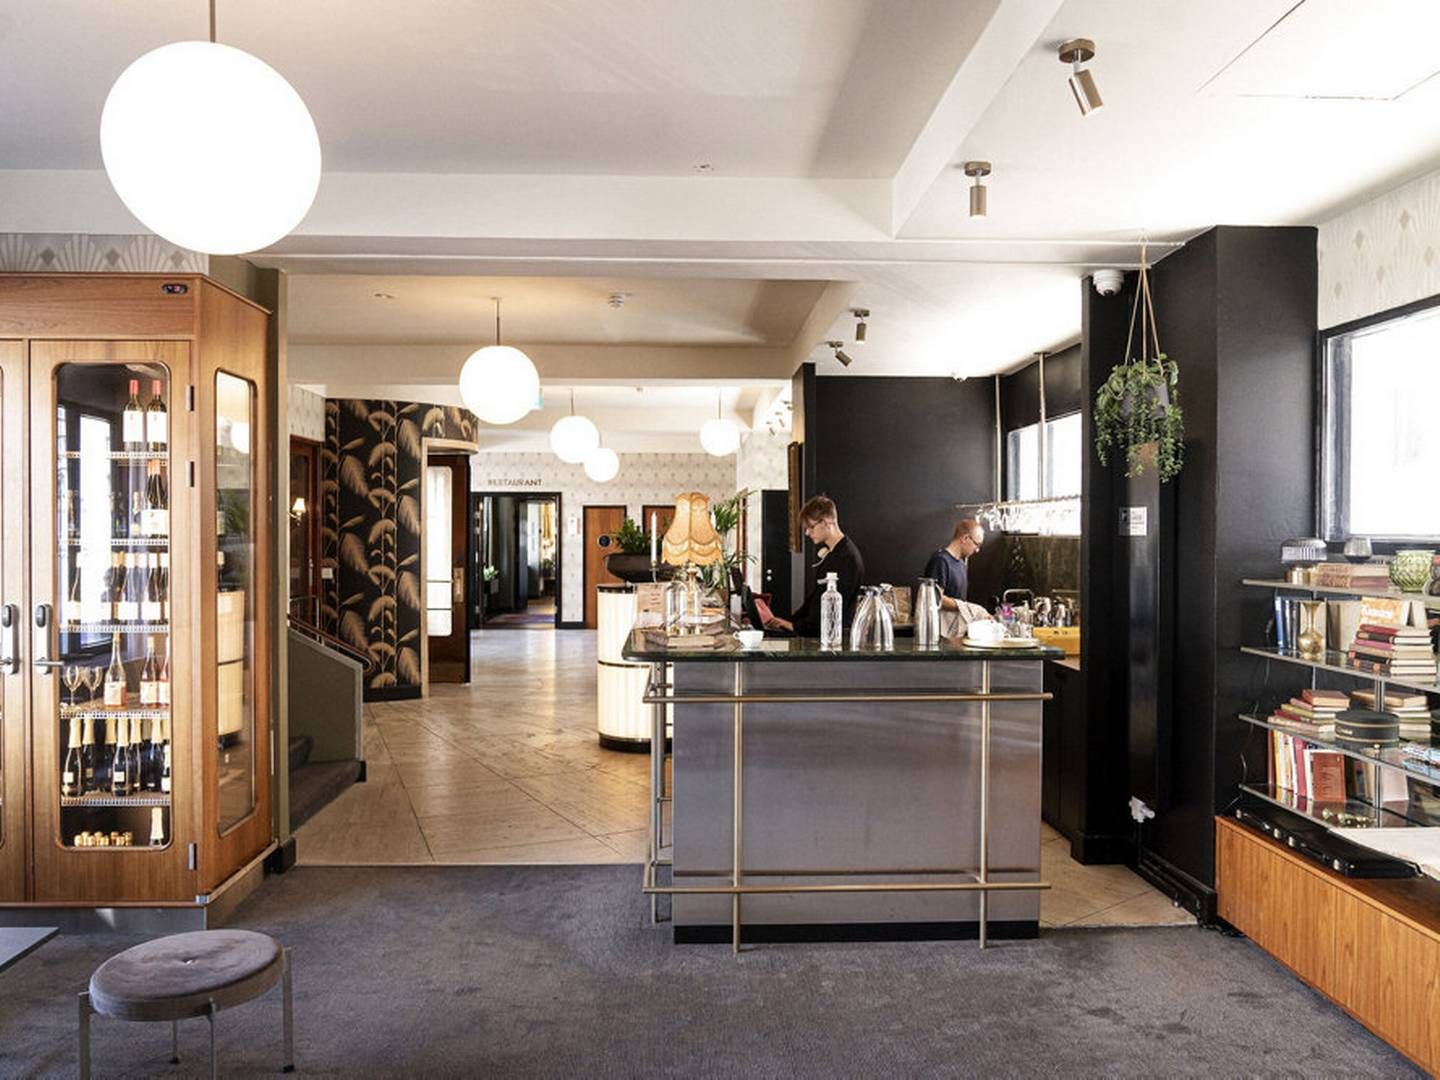 Det er blandt andet fremgang i hotel- og restaurationsbranchen, der ifølge Danmarks Statistik har fået dansk økonomi tilbage på sporet i andet kvartal. (Arkivfoto) | Foto: Mathias Svold/Ritzau Scanpix